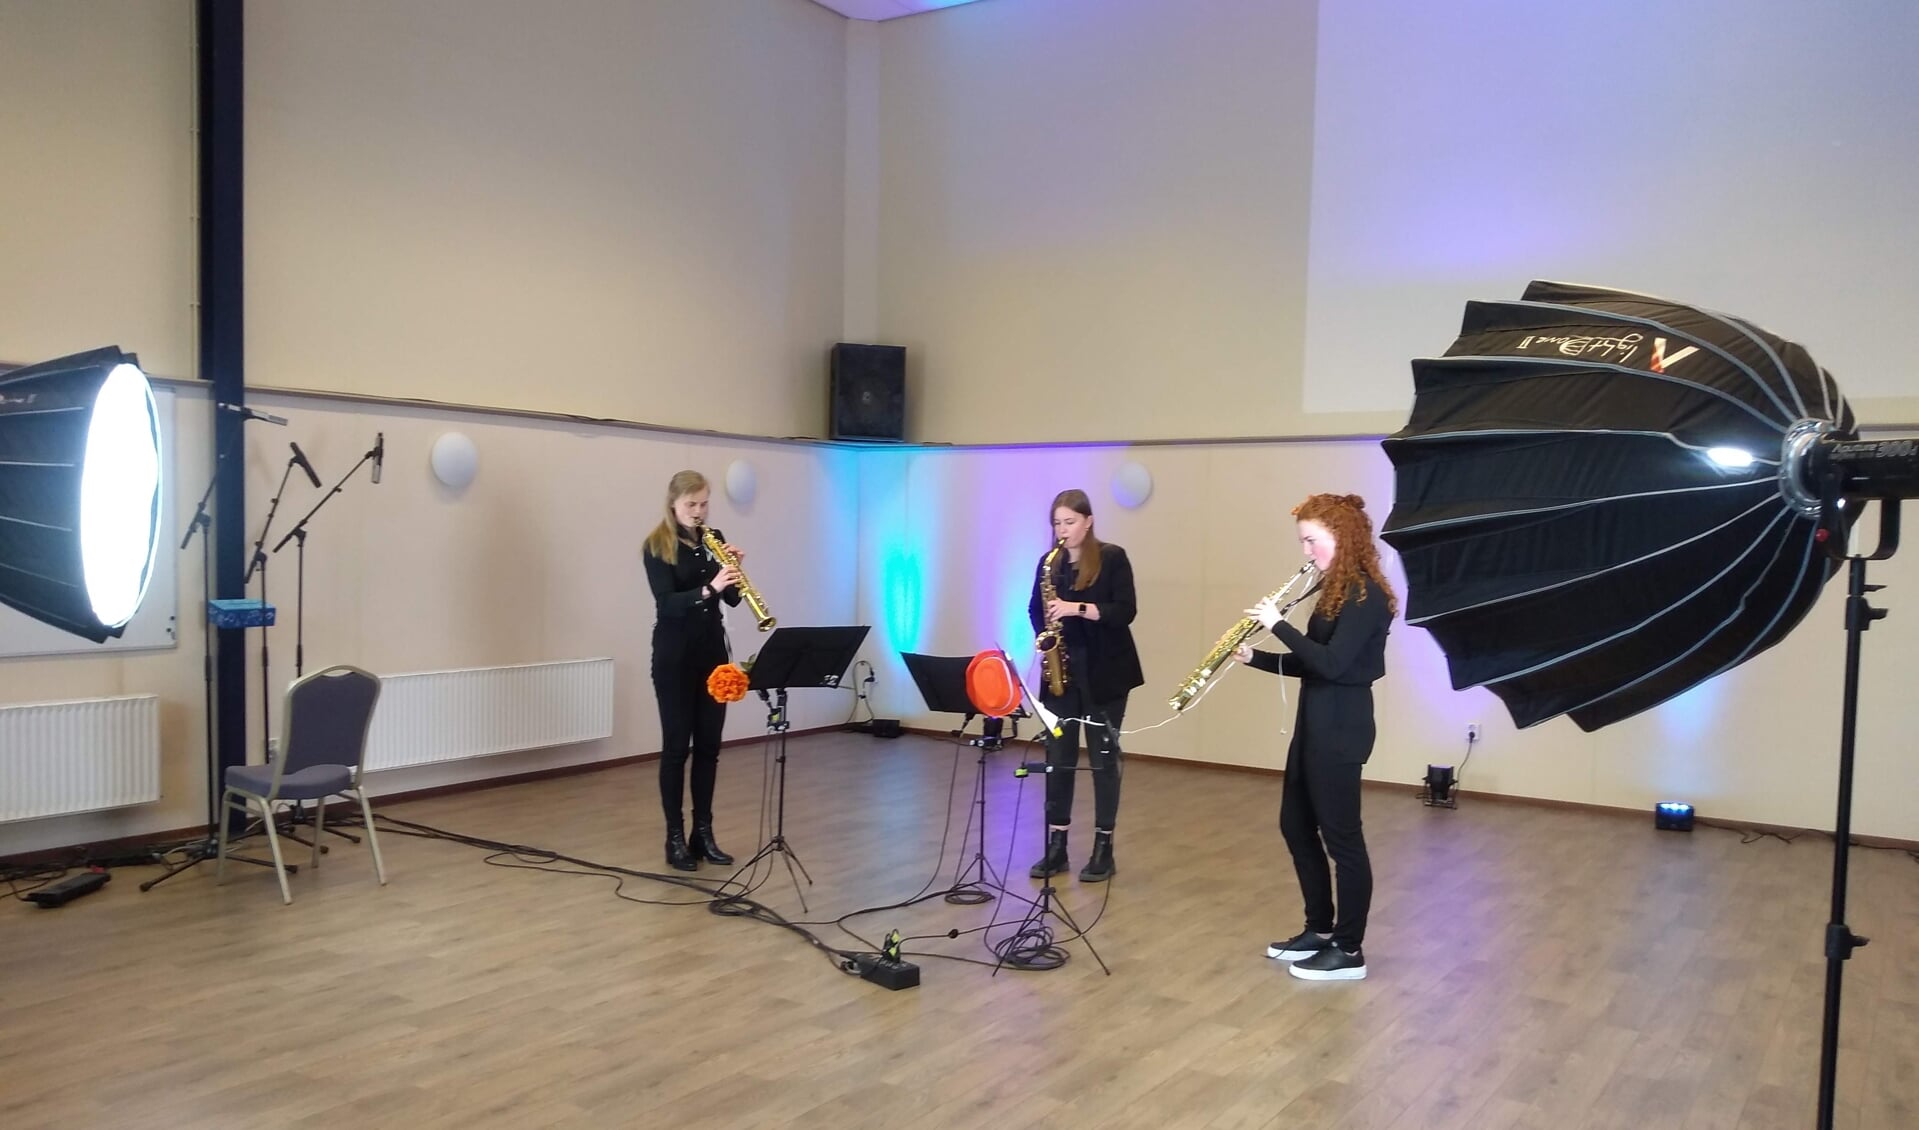 Opnames voor het digitale Koningsdagconcert in de Klephoorn door Ezra te Paske, Arianne Jentink en Loïs Hieltjes. foto PR Eendracht